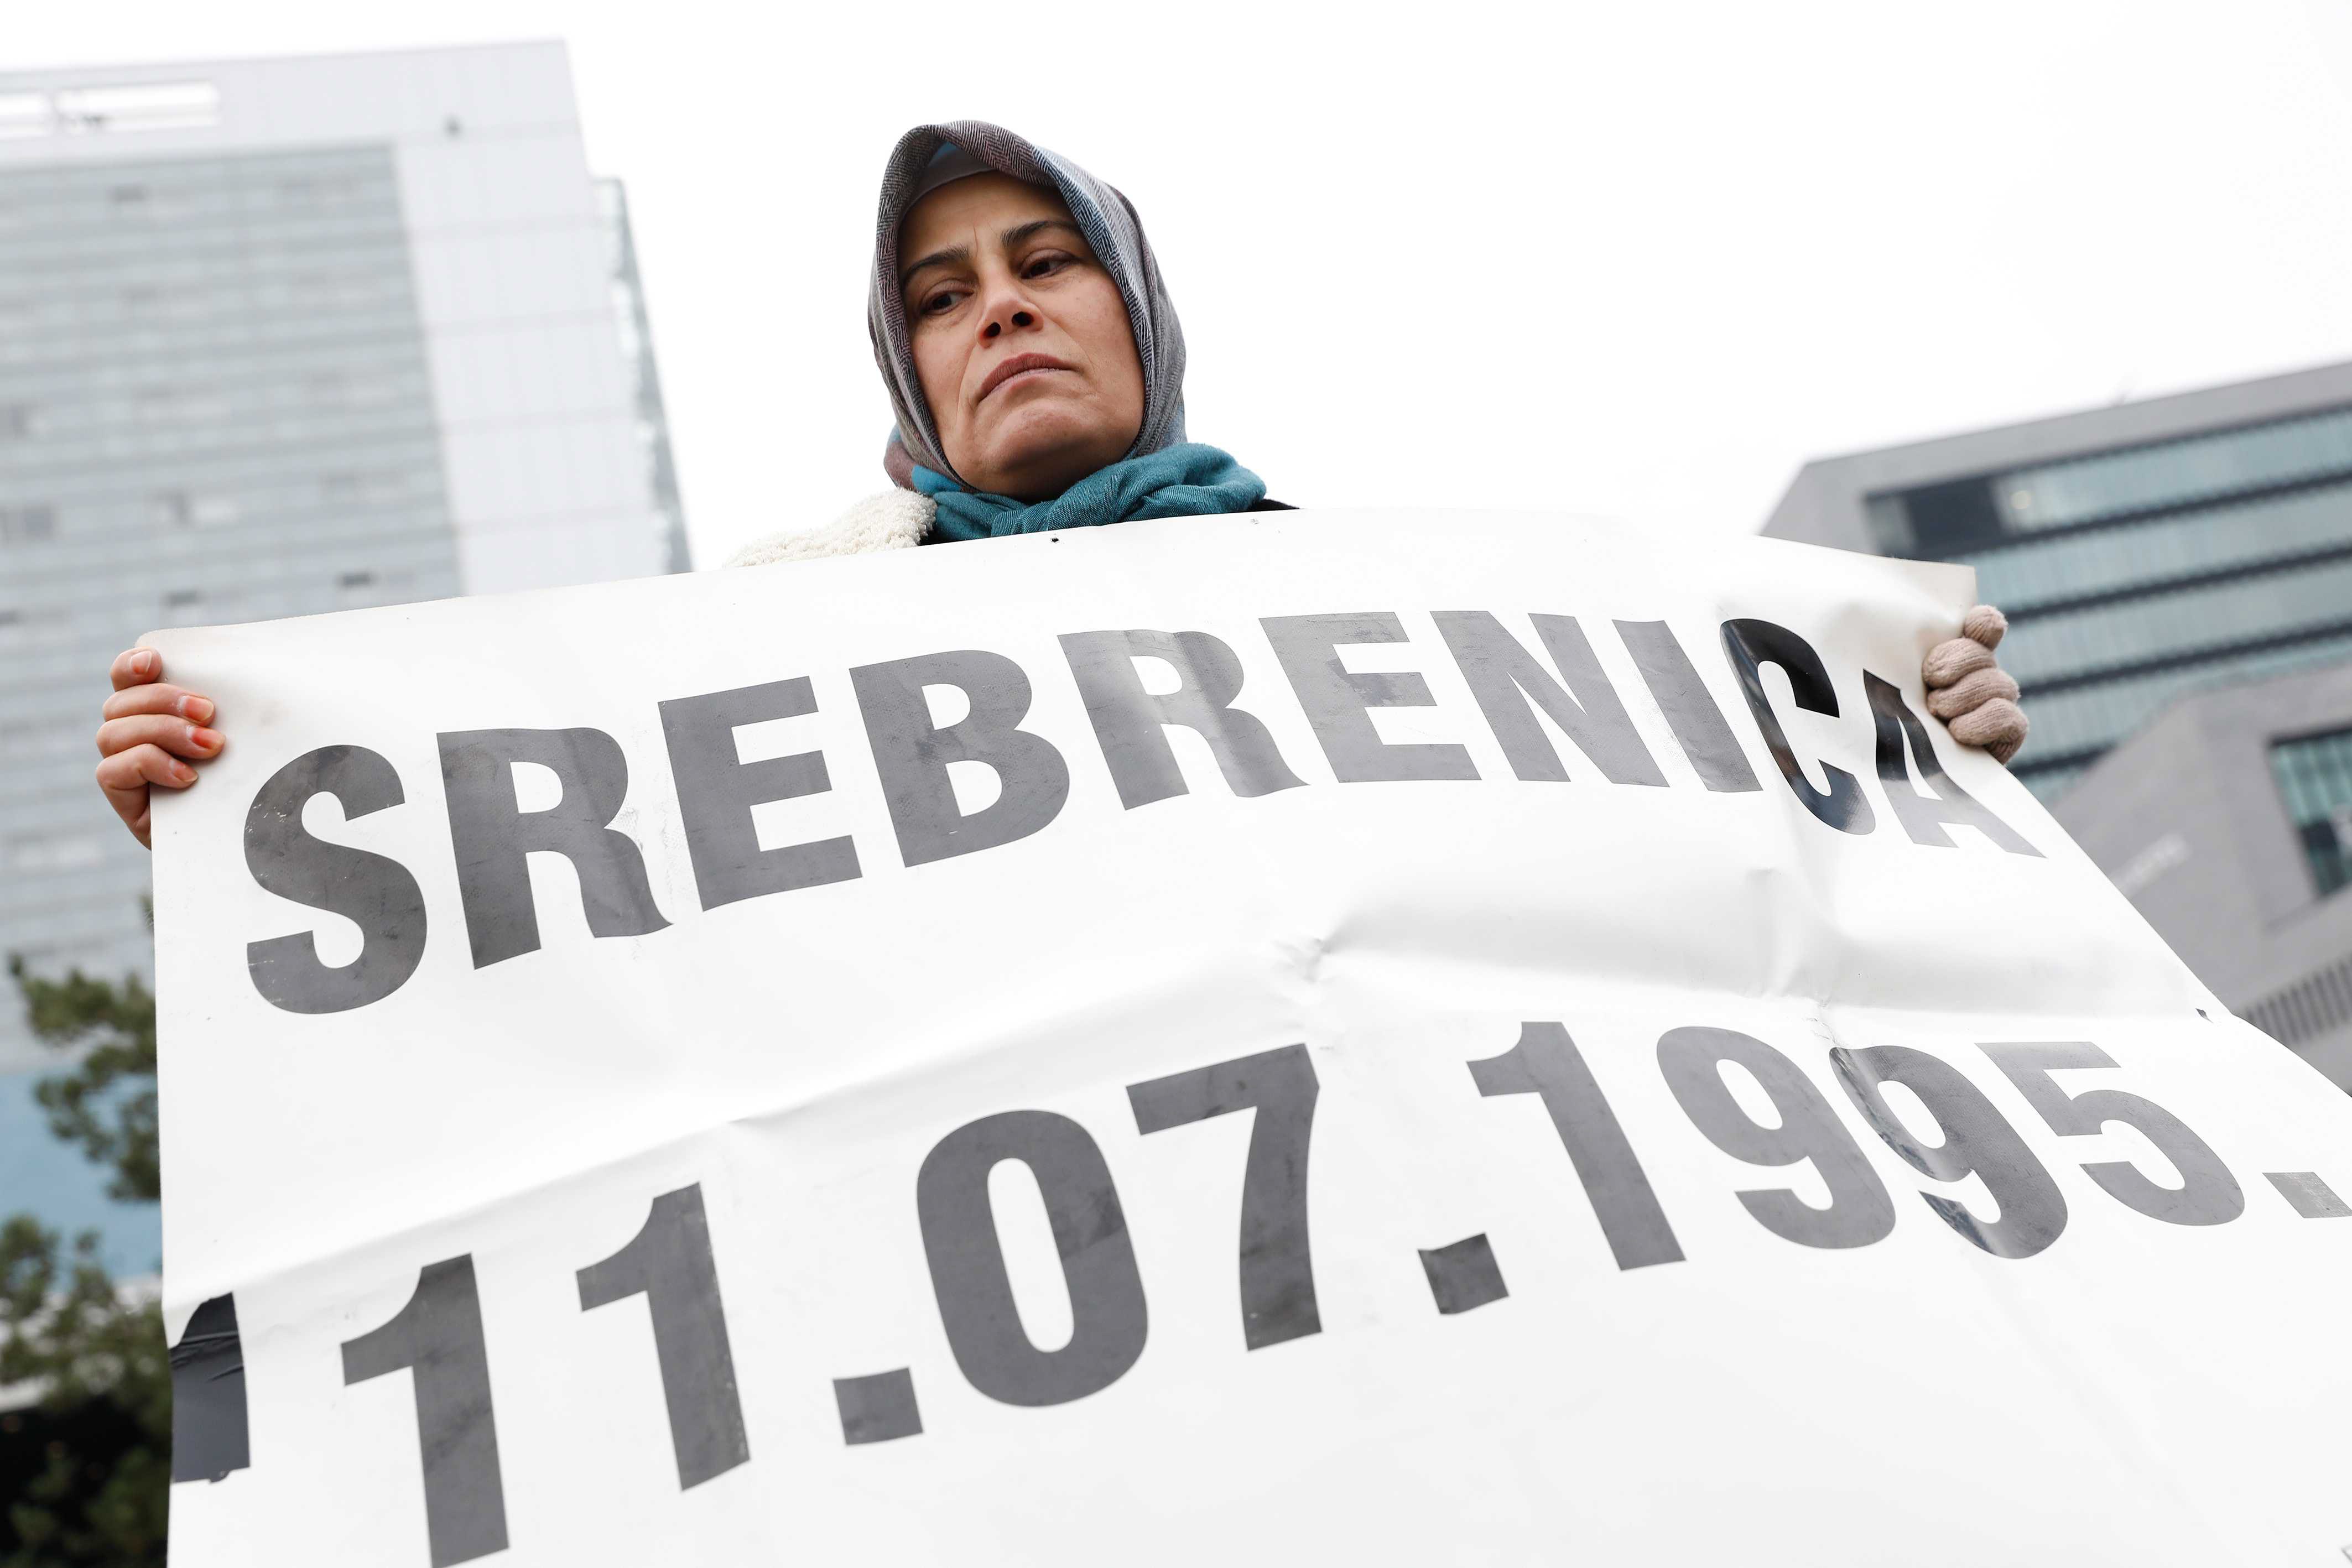 Като военен командир на босненските сърби Младич е пряко отговорен за клането в гр. Сребреница. През юли 1995г. там са убити няколко хиляди мюсюлмански мъже и момчета